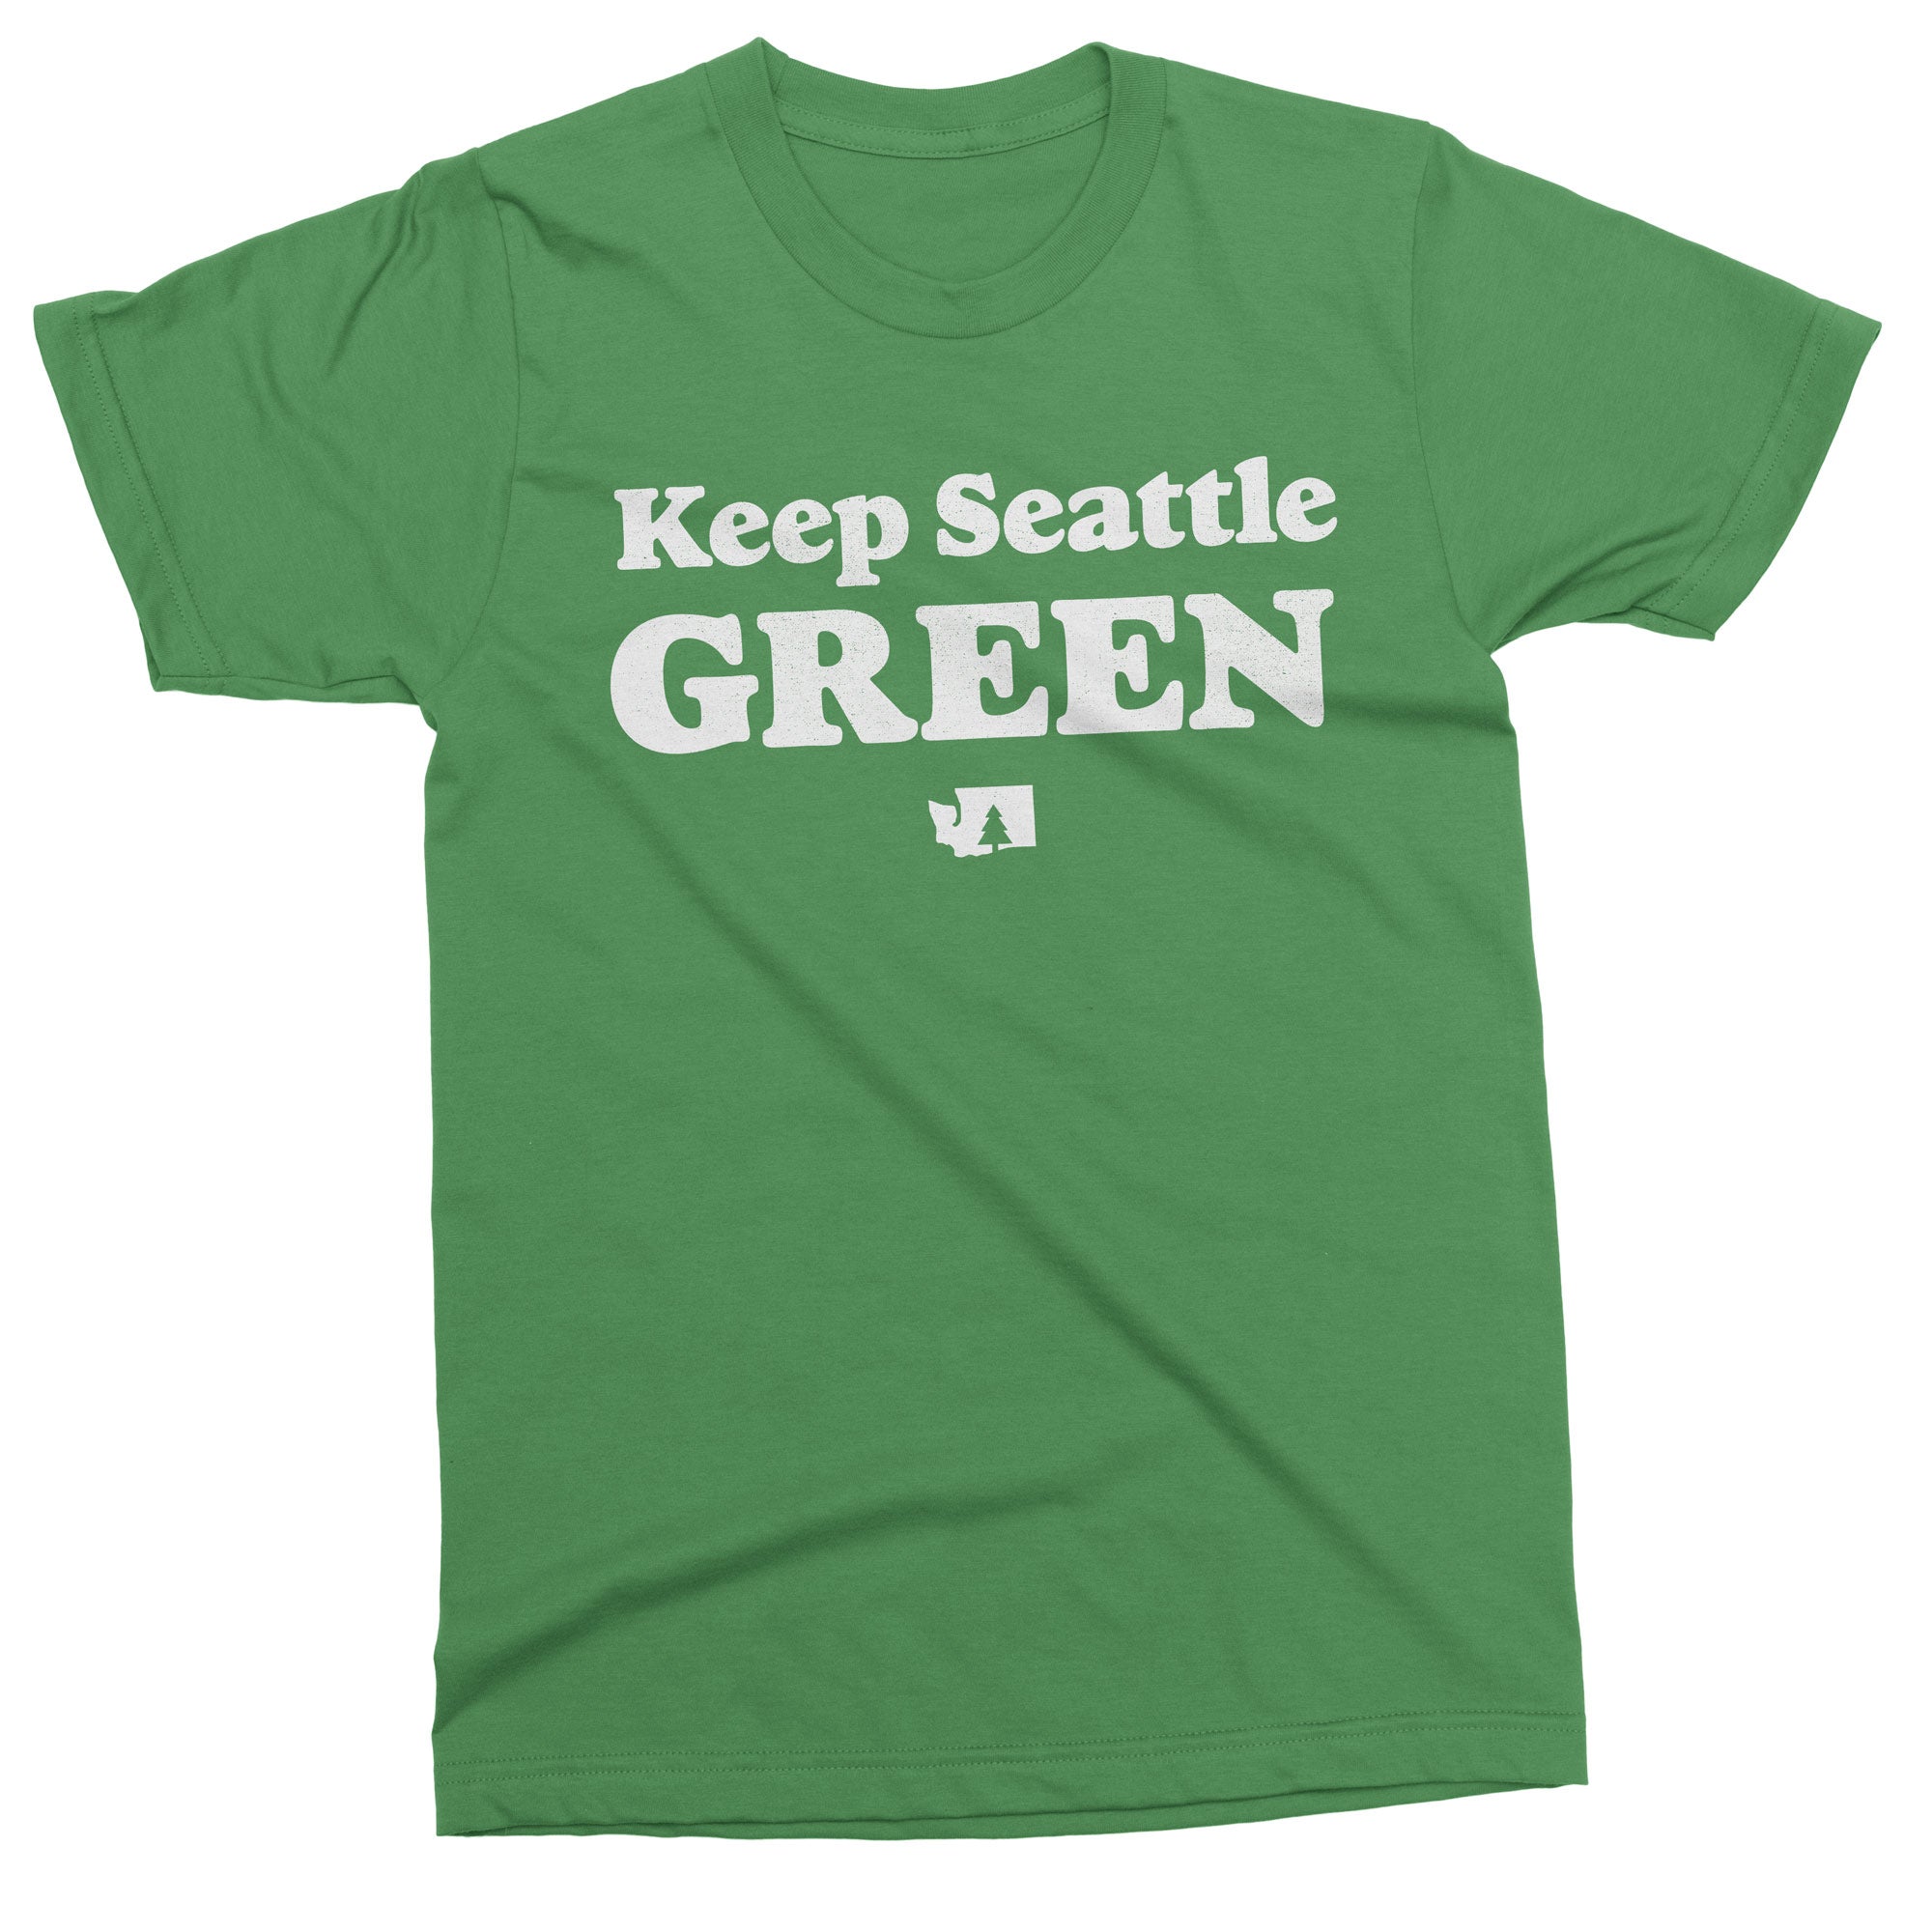 Keep Seattle Green tshirt - Viaduct